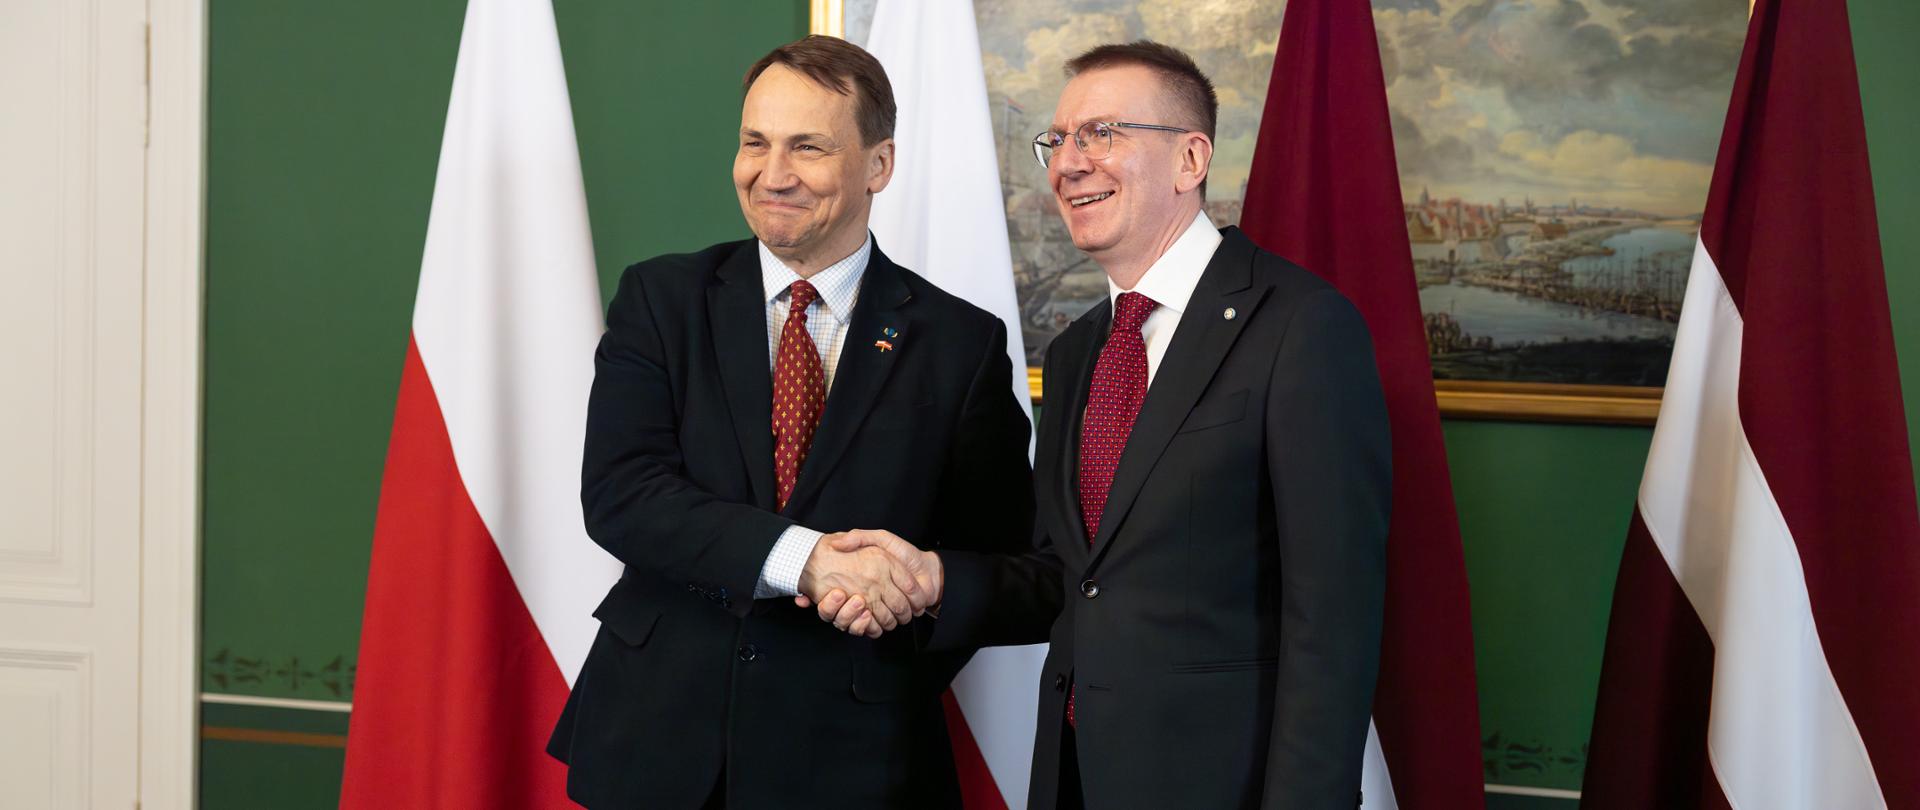 Minister Radosław Sikorski with the President of Latvia Edgars Rinkēvičs